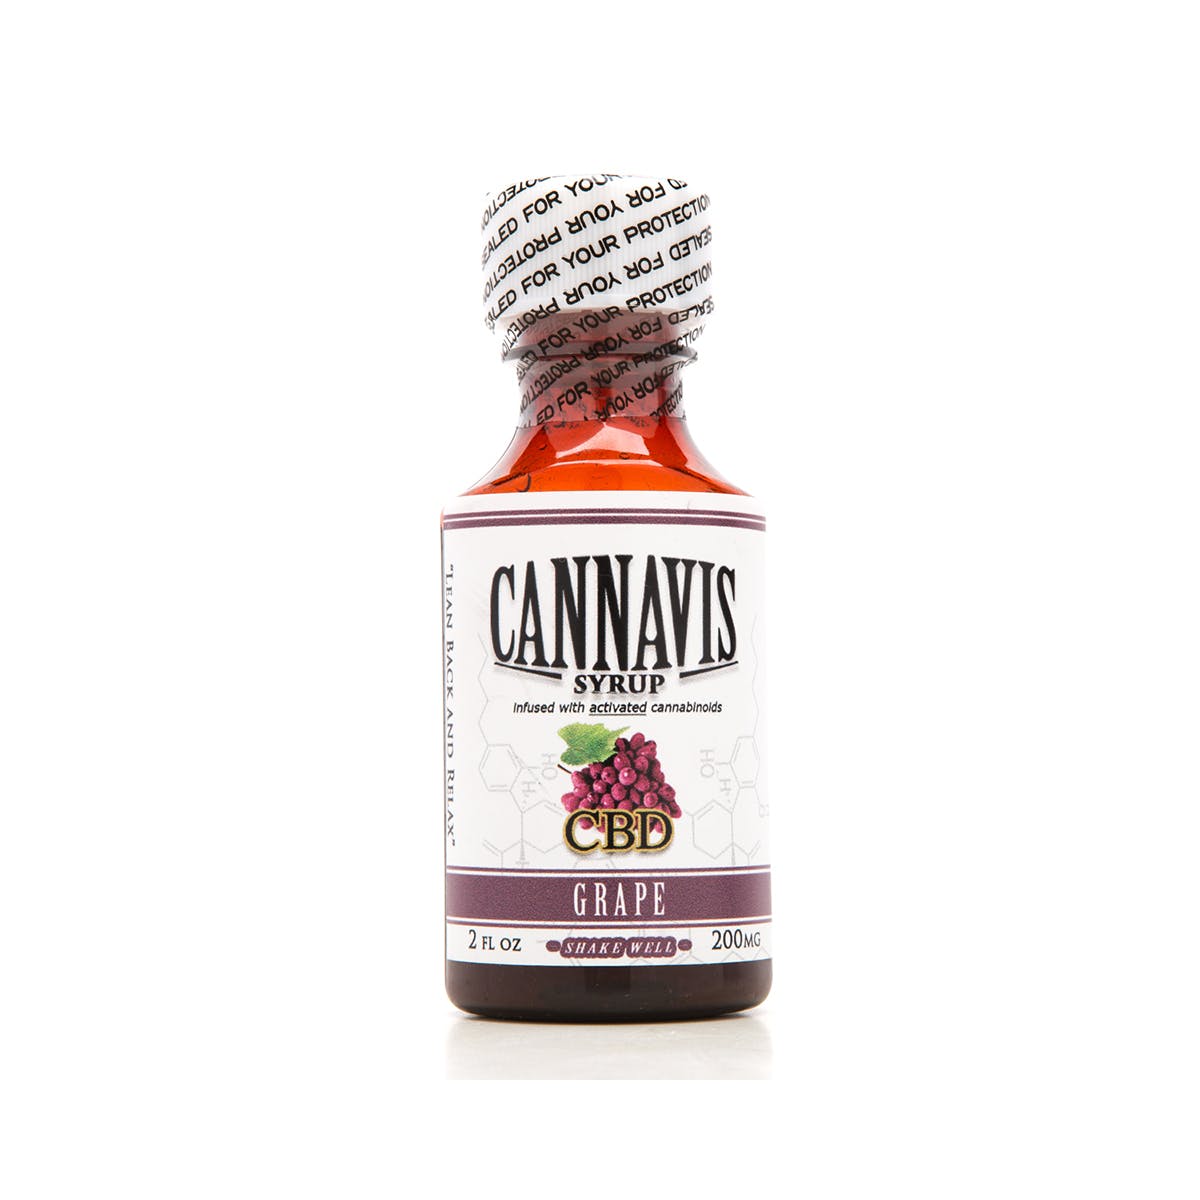 Cannavis Syrup, CBD Grape 200mg